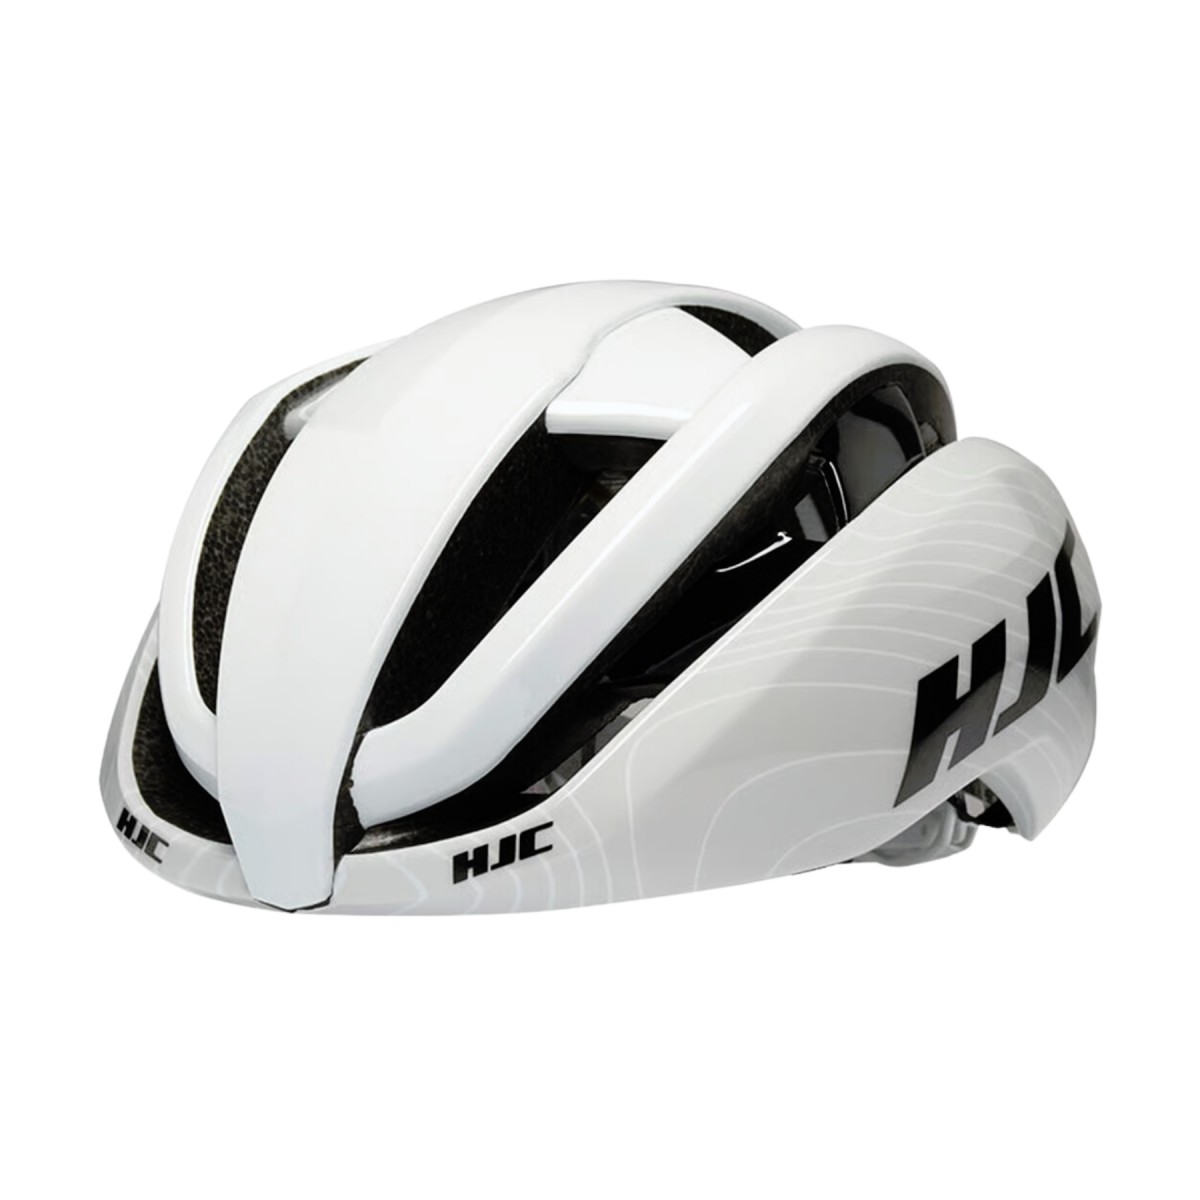 Helm günstig Kaufen-HJC Ibex 2.0 Helm Weiß Grau, Größe L. HJC Ibex 2.0 Helm Weiß Grau, Größe L <![CDATA[HJC Ibex 2.0 Helm Weiß Grau
 Der HJC Ibex 2.0 Helm ist ein ultraleichter und bequemer Helm, der für optimale Belüftung sorgt.